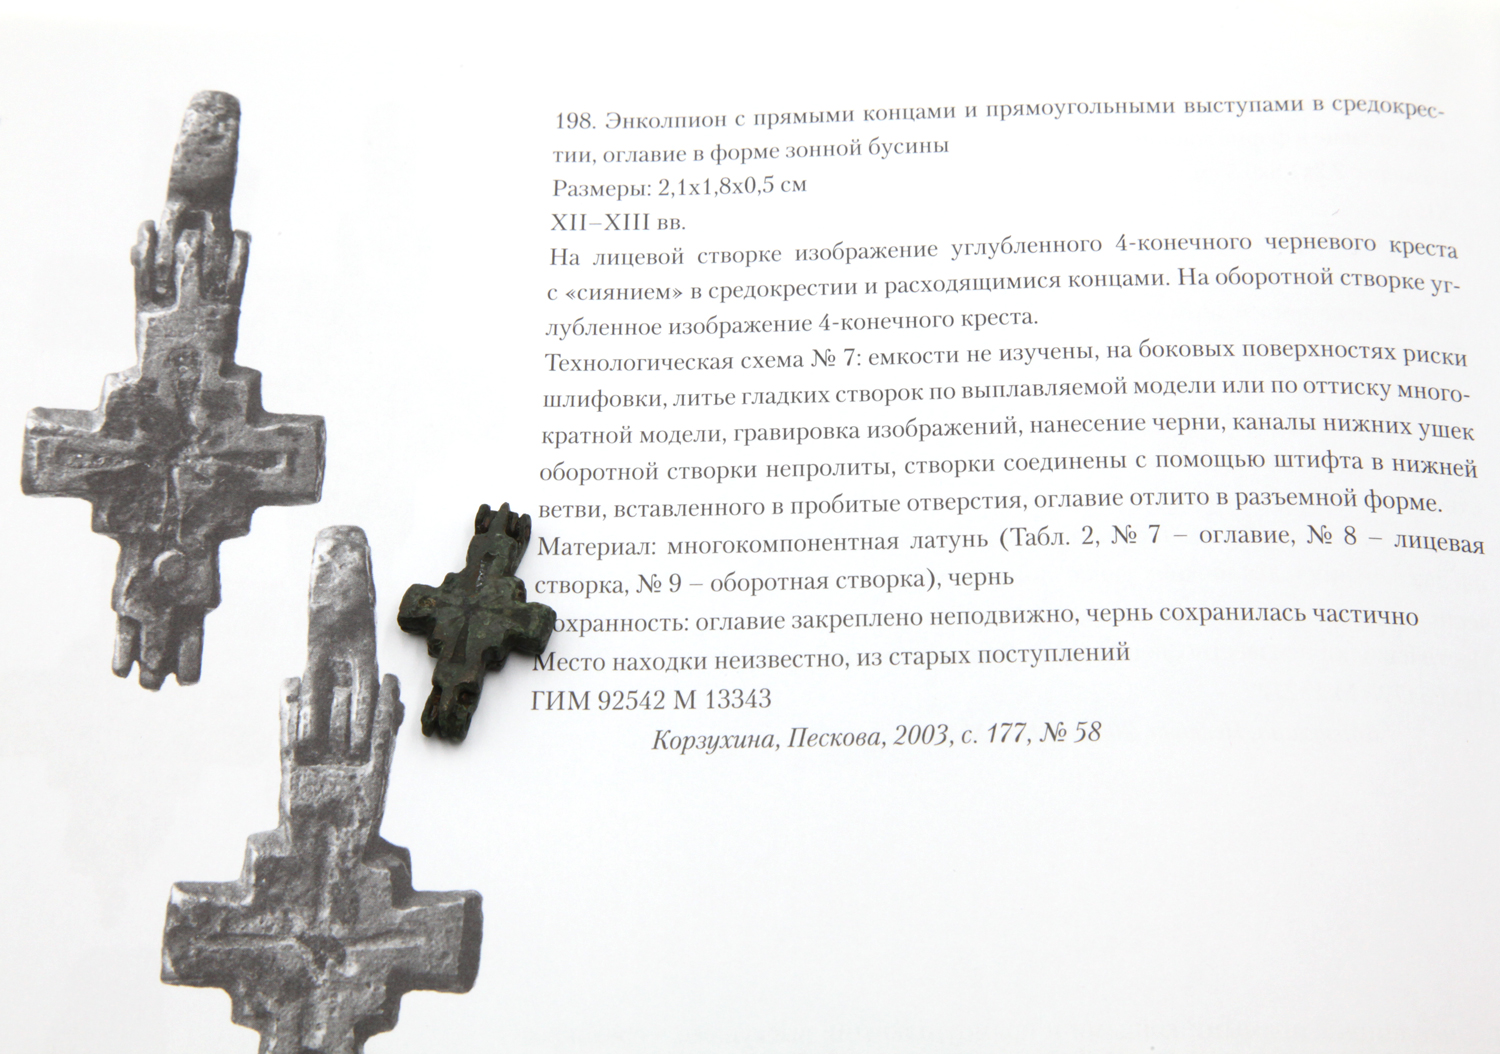 Древний русский окаменевший крест энколпион с сиянием в средокрестии, без оглавия. Древняя Русь XI-XIII век